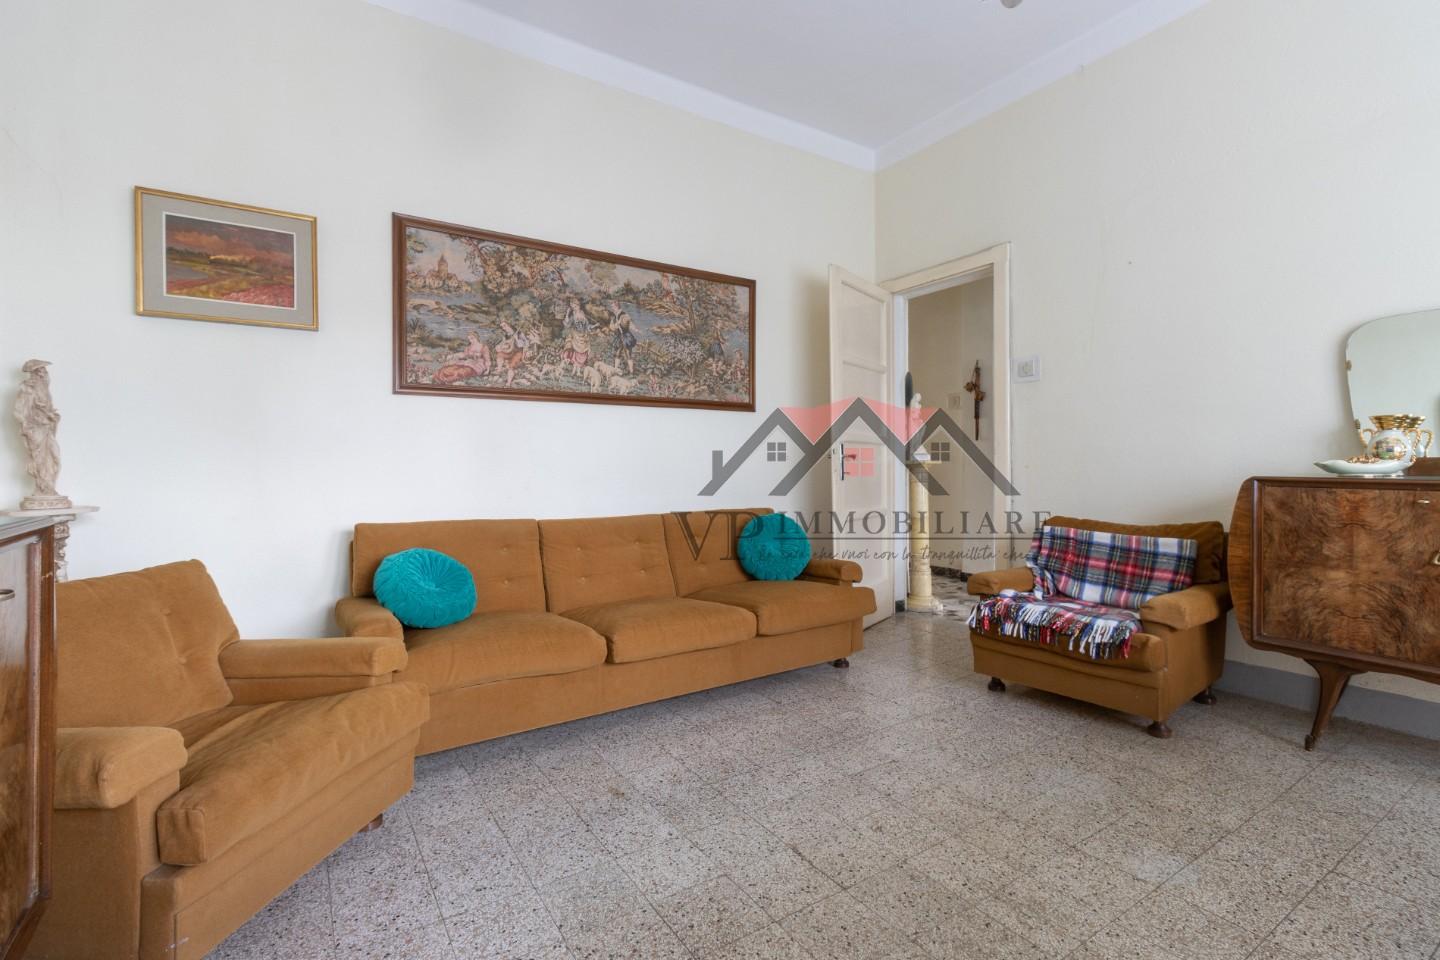 Appartamento in vendita a Castelnuovo di Val di Cecina, 4 locali, prezzo € 48.000 | PortaleAgenzieImmobiliari.it